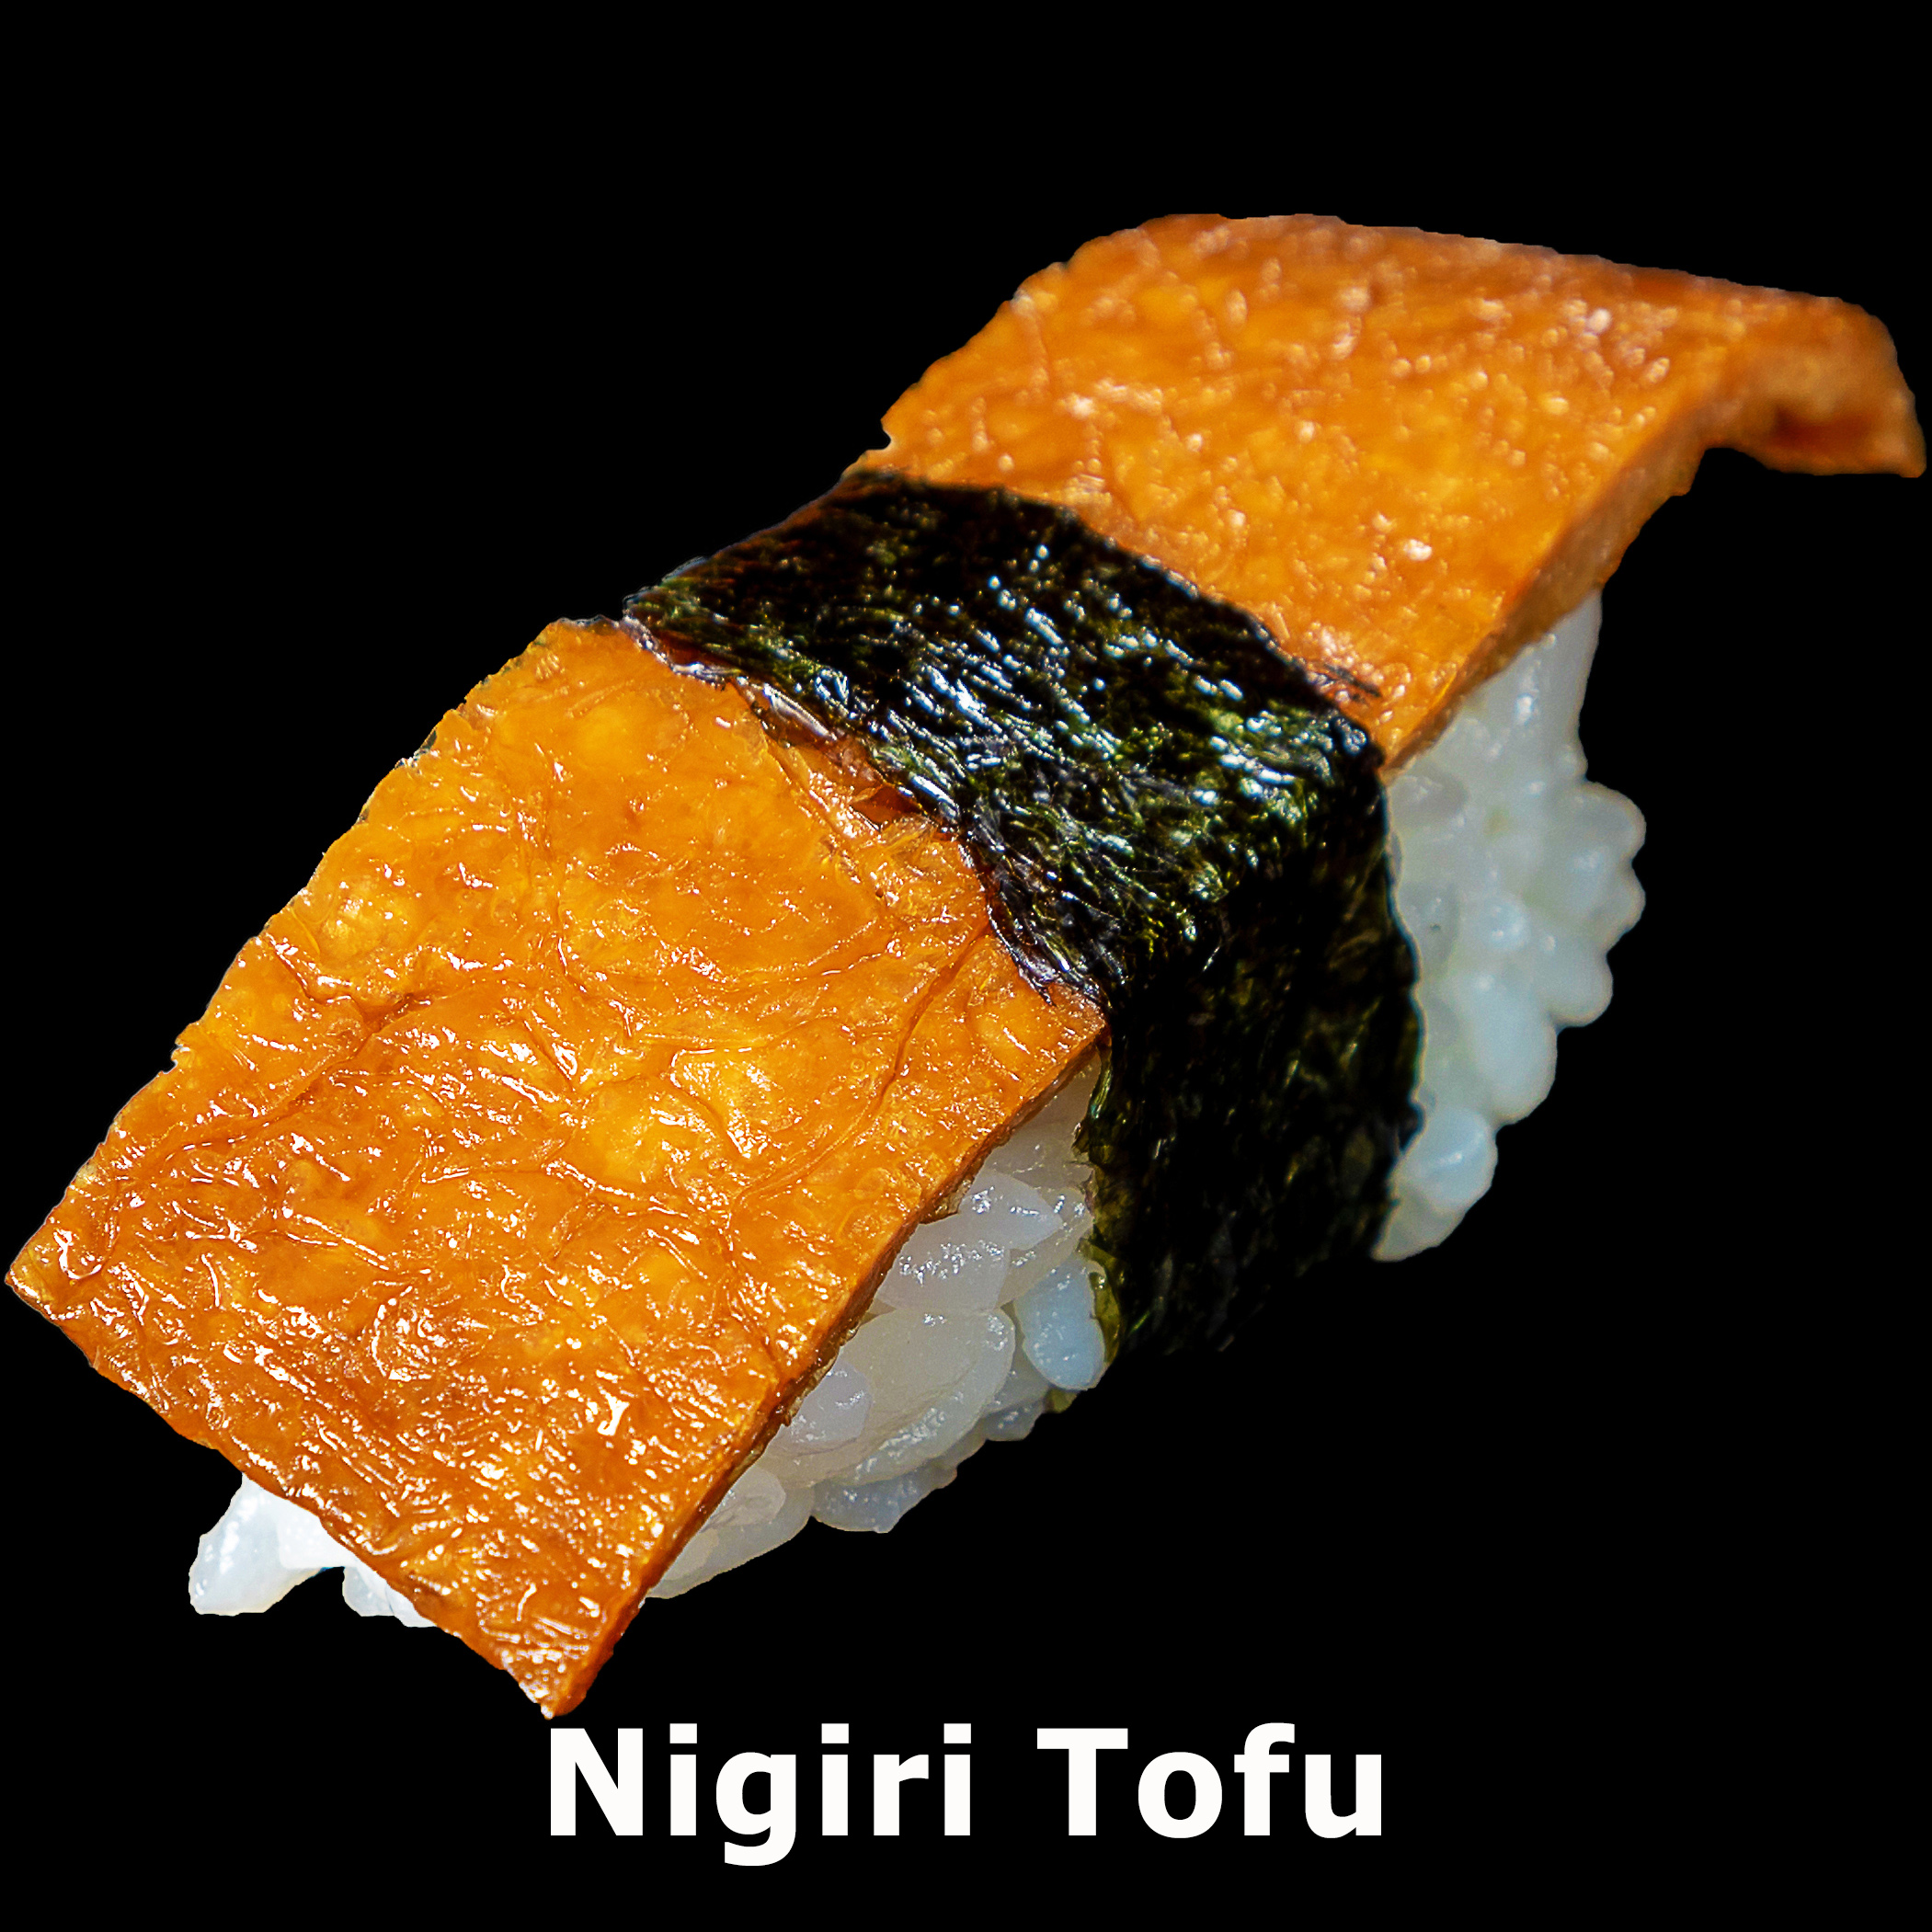 56. Nigiri Tofu